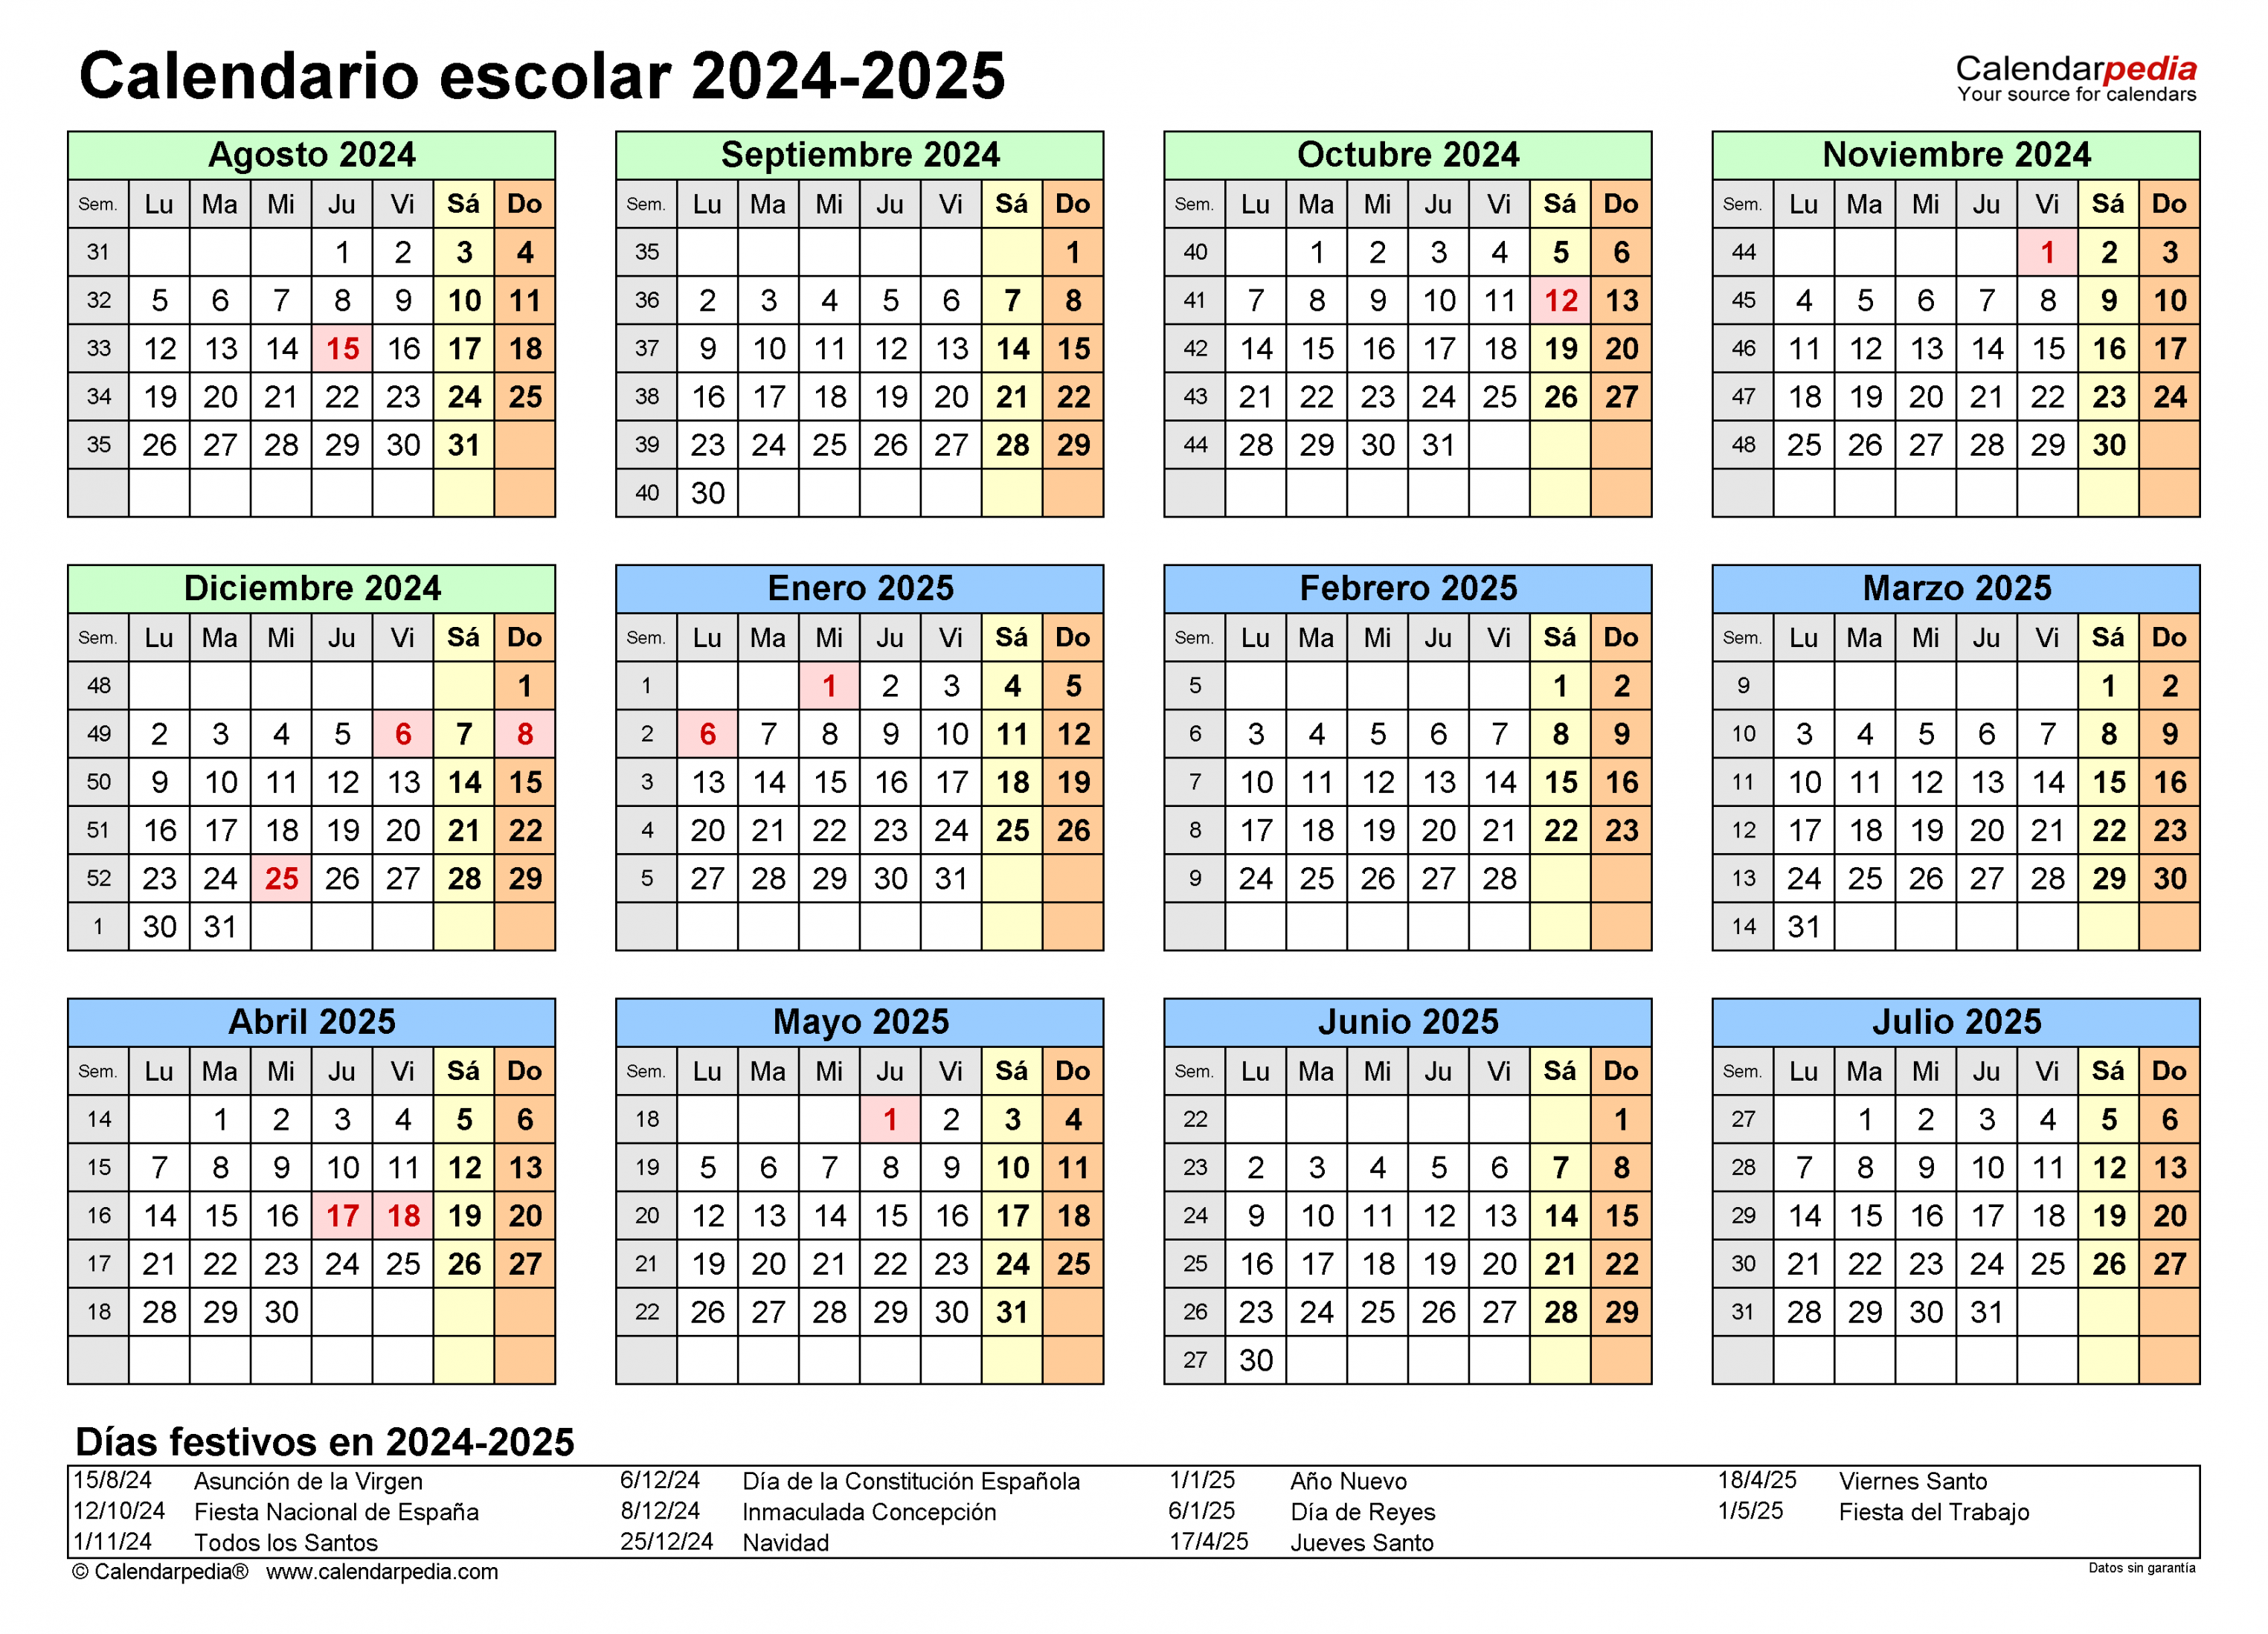 Calendario escolar - en Word, Excel y PDF